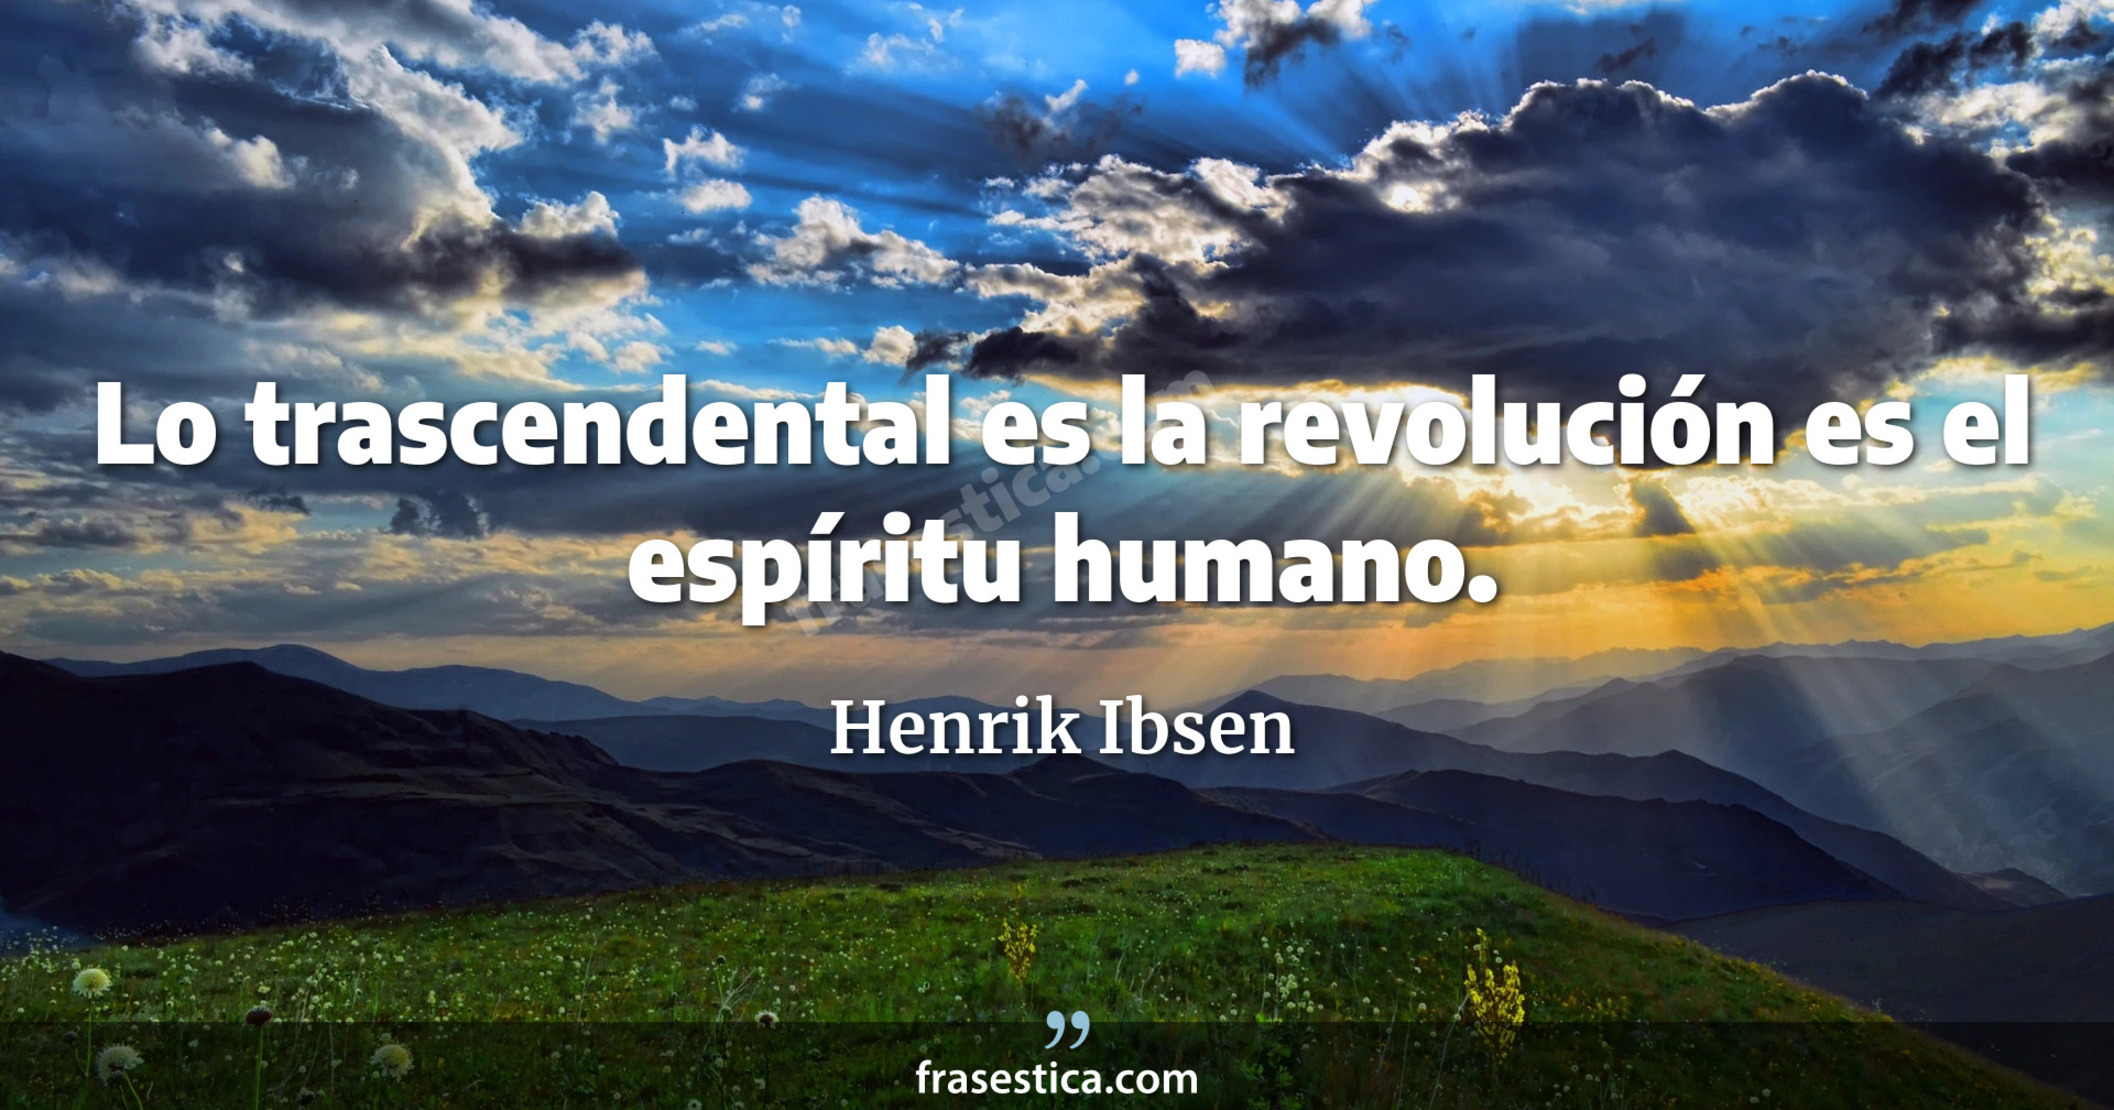 Lo trascendental es la revolución es el espíritu humano. - Henrik Ibsen